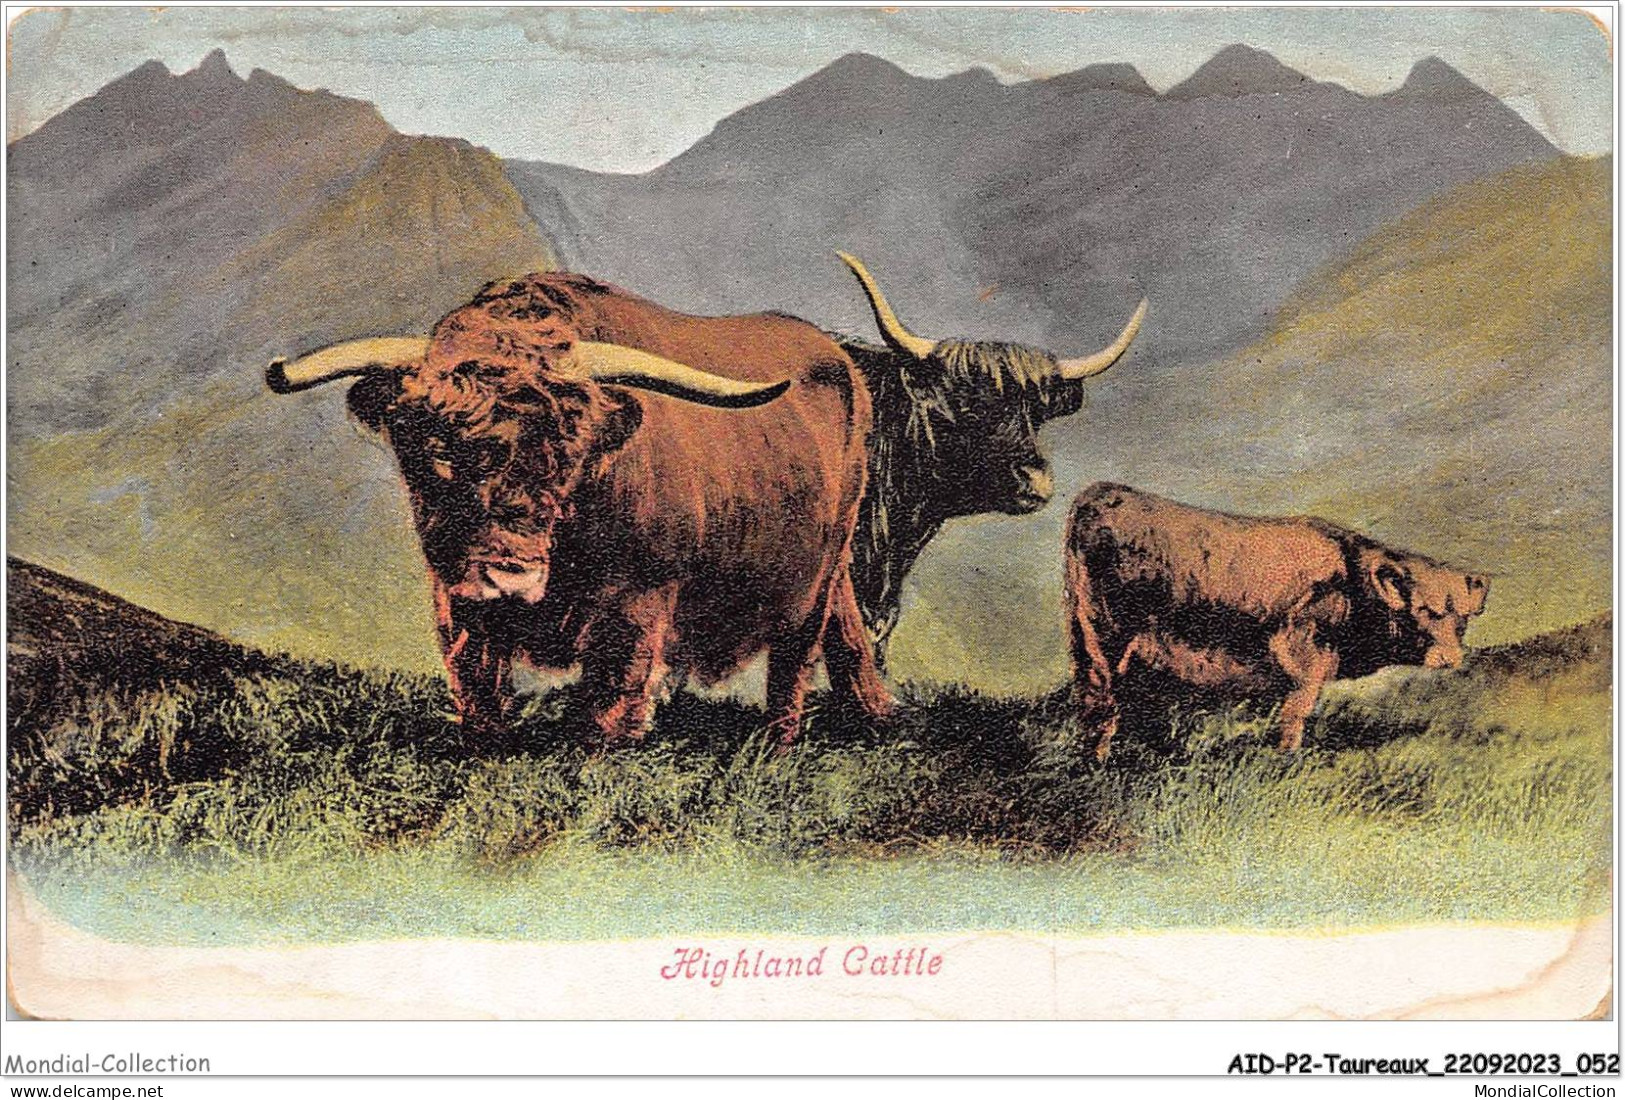 AIDP2-TAUREAUX-0100 - Highland Cattle  - Stieren